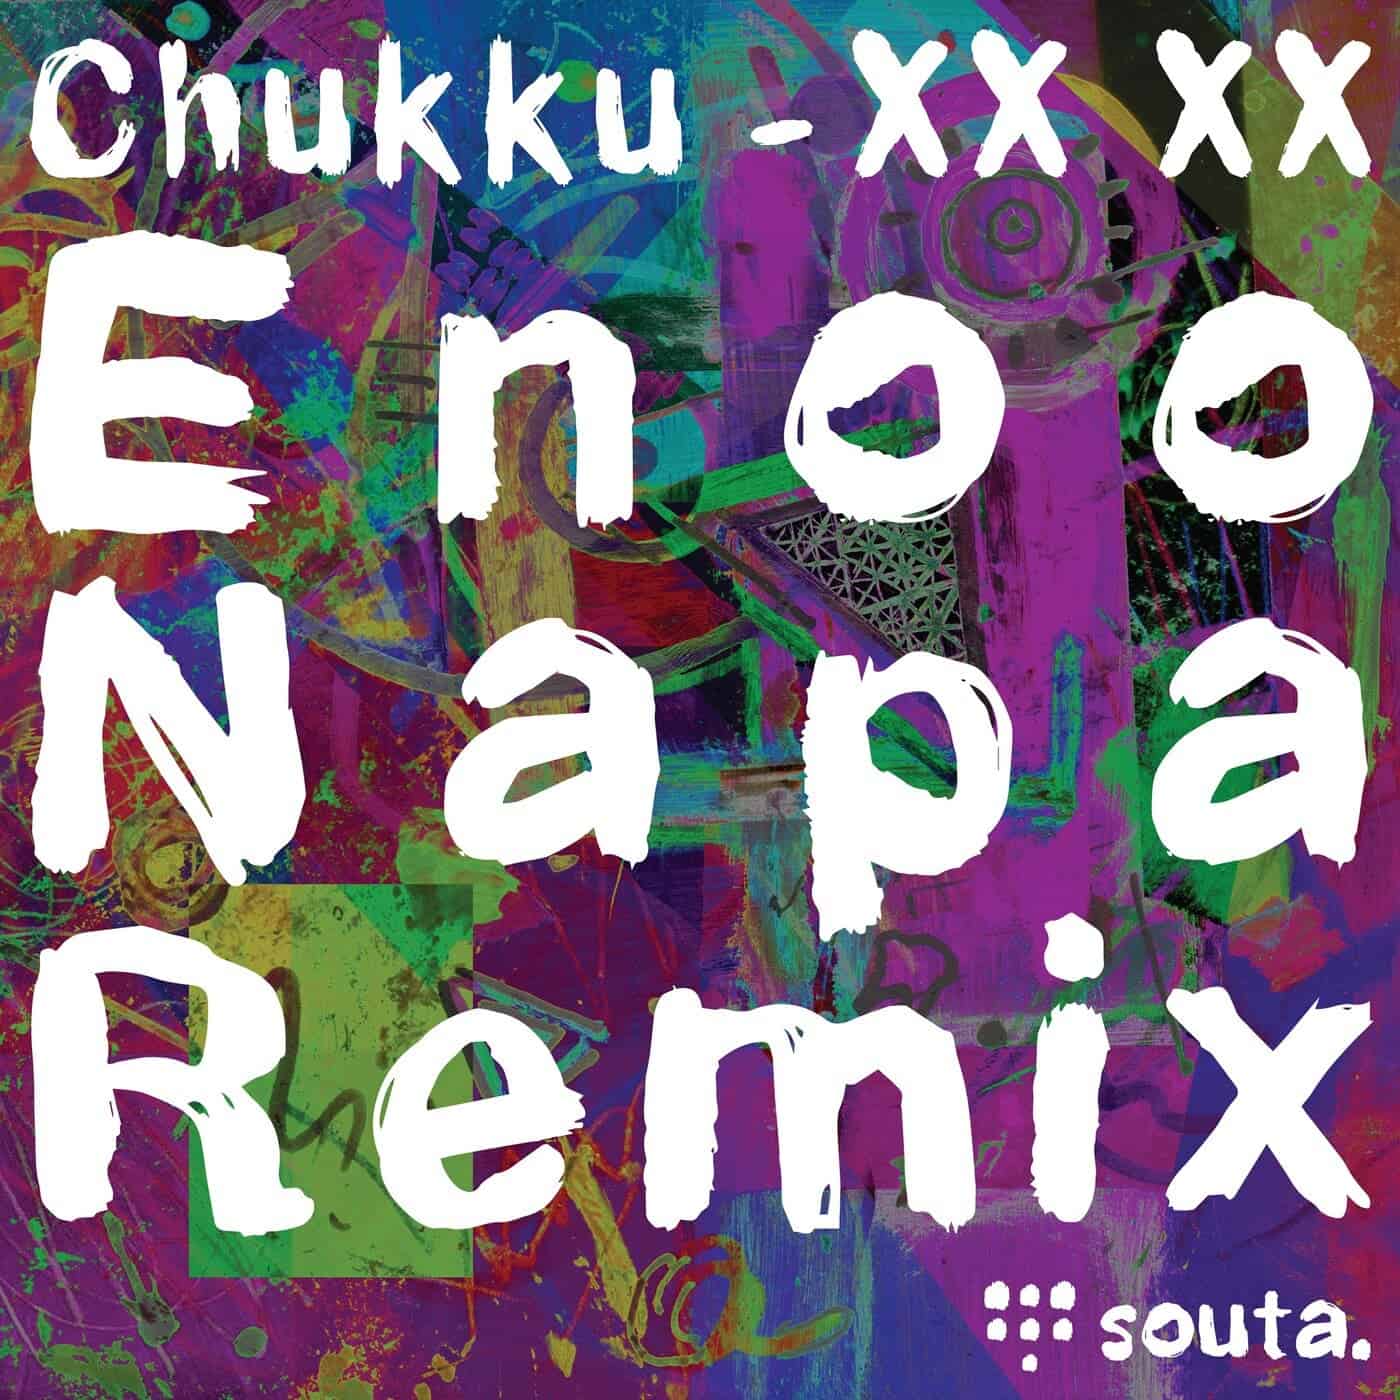 Download Enoo Napa, Chukku - XX XX (Enoo Napa Remix) on Electrobuzz